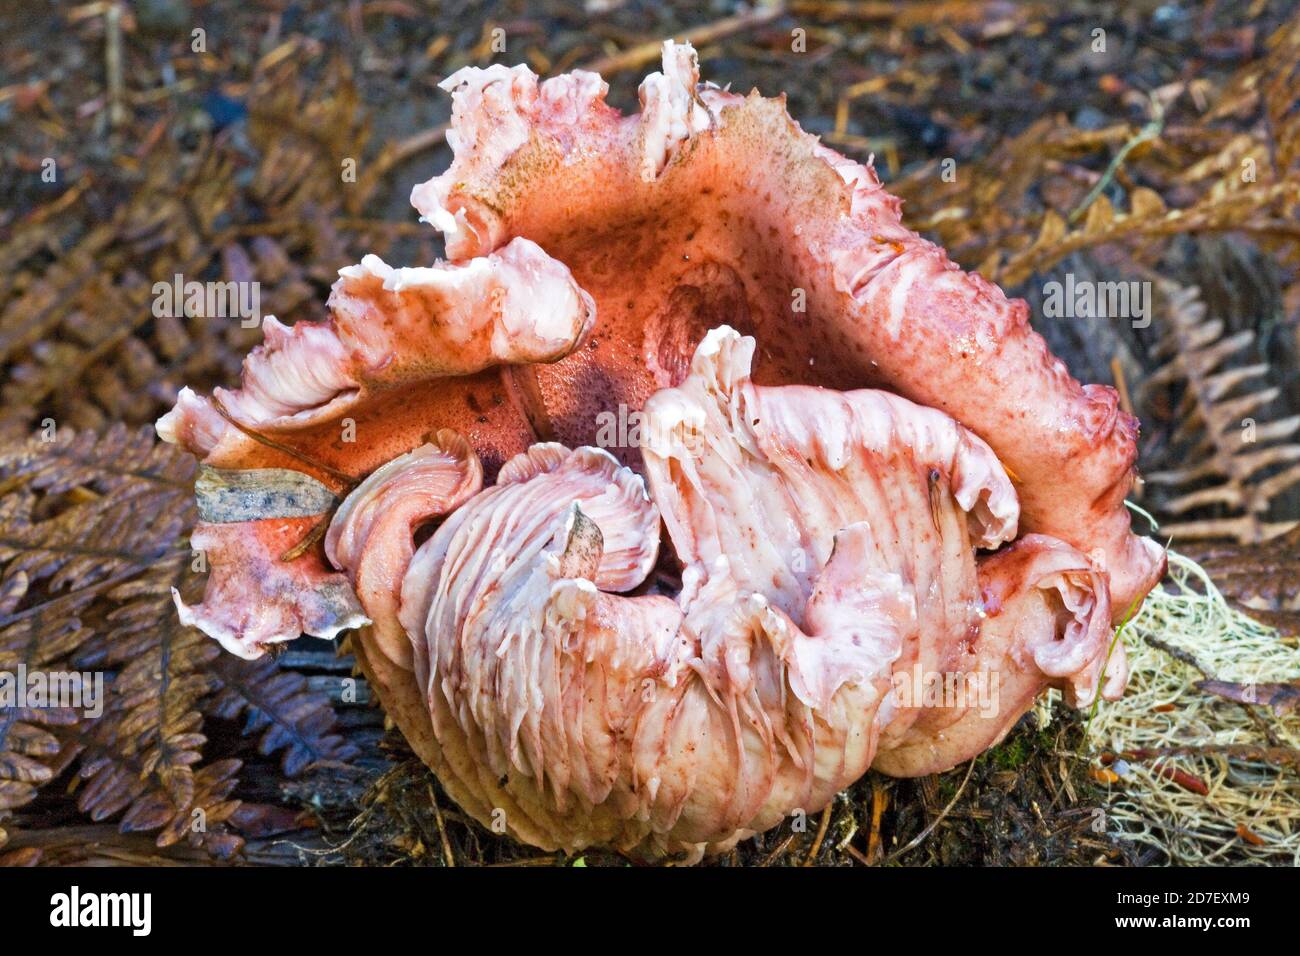 Hygrophorus Täubling, ein großer rosafarbener Pilz, der im pazifischen Nordwesten gefunden wurde. Dieses Hotel liegt in den Cascade Mountains im Zentrum von Oregon. Nicht essbar. Stockfoto